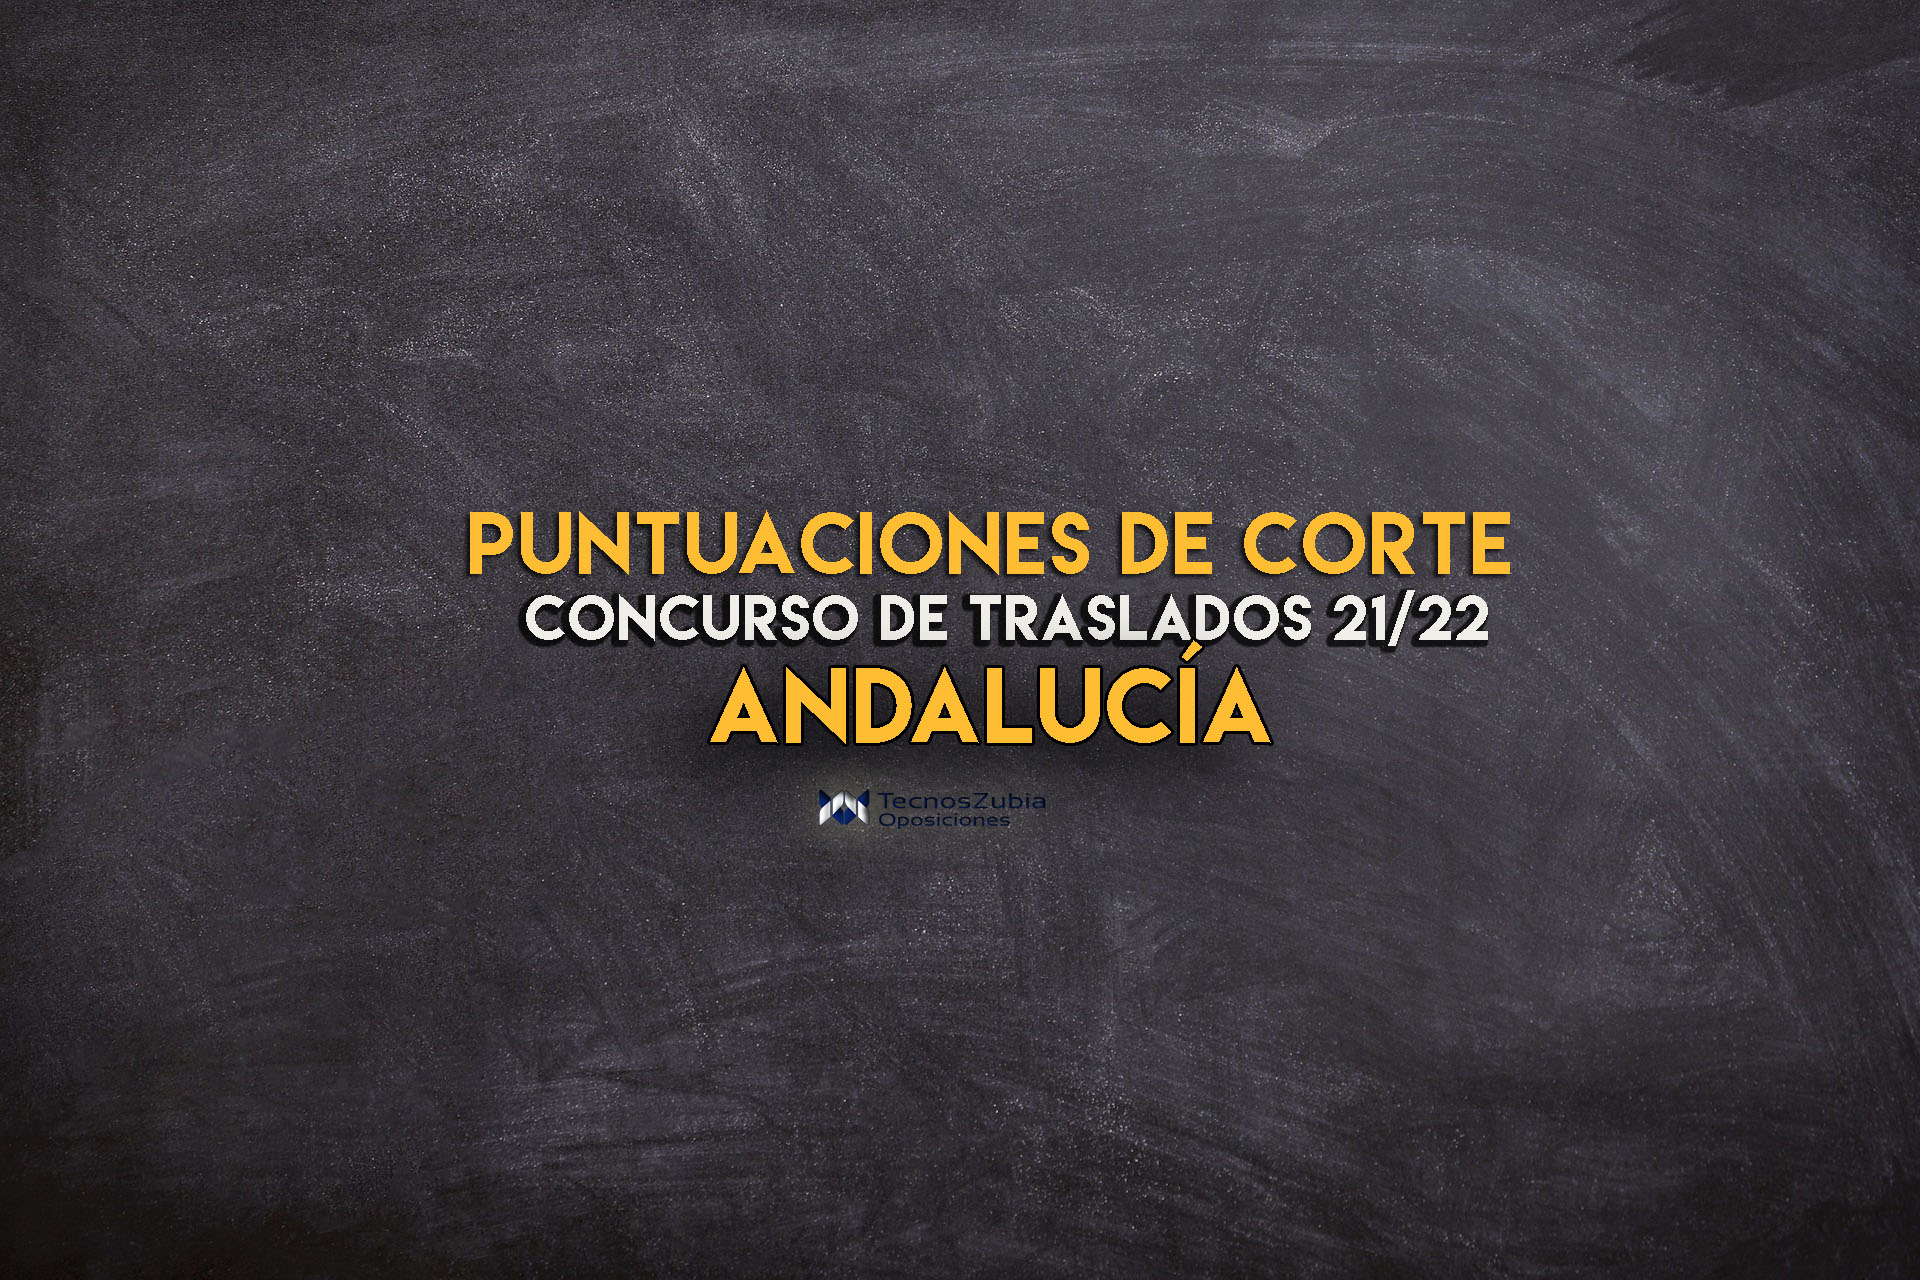 Puntuaciones de corte Concurso de traslados Andalucía 21-22